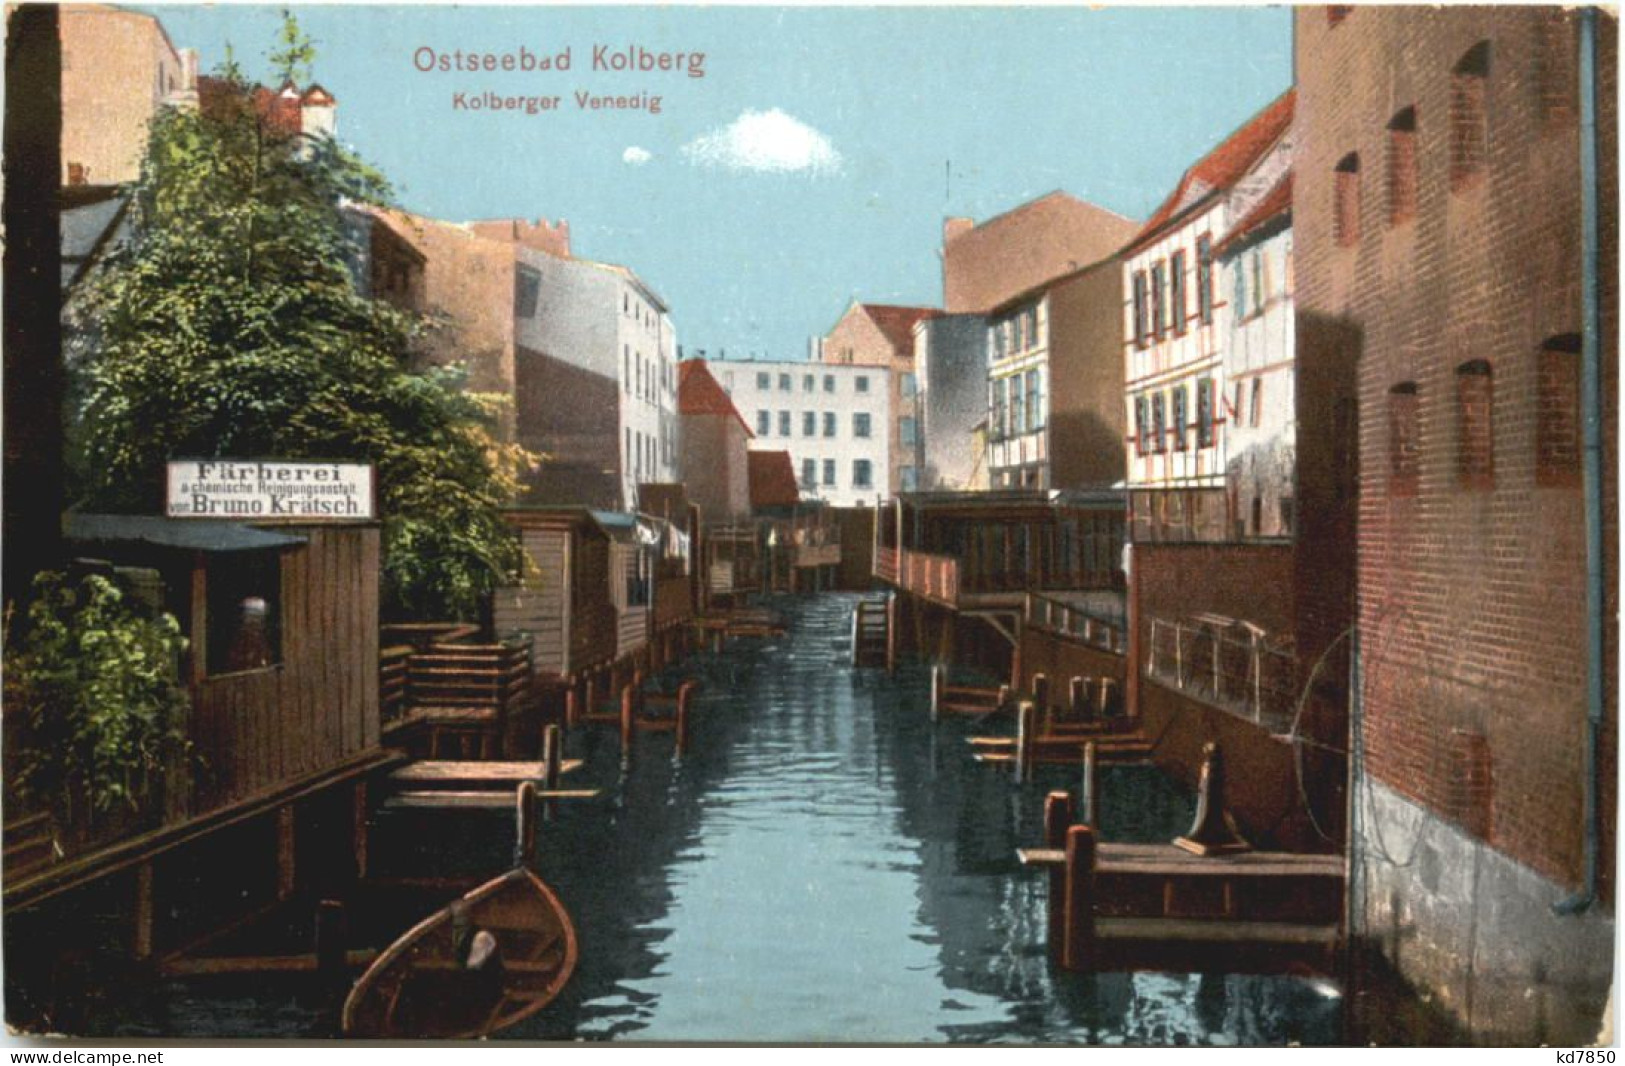 Ostseebad Kolberg - Kolberger Venedig - Pommern